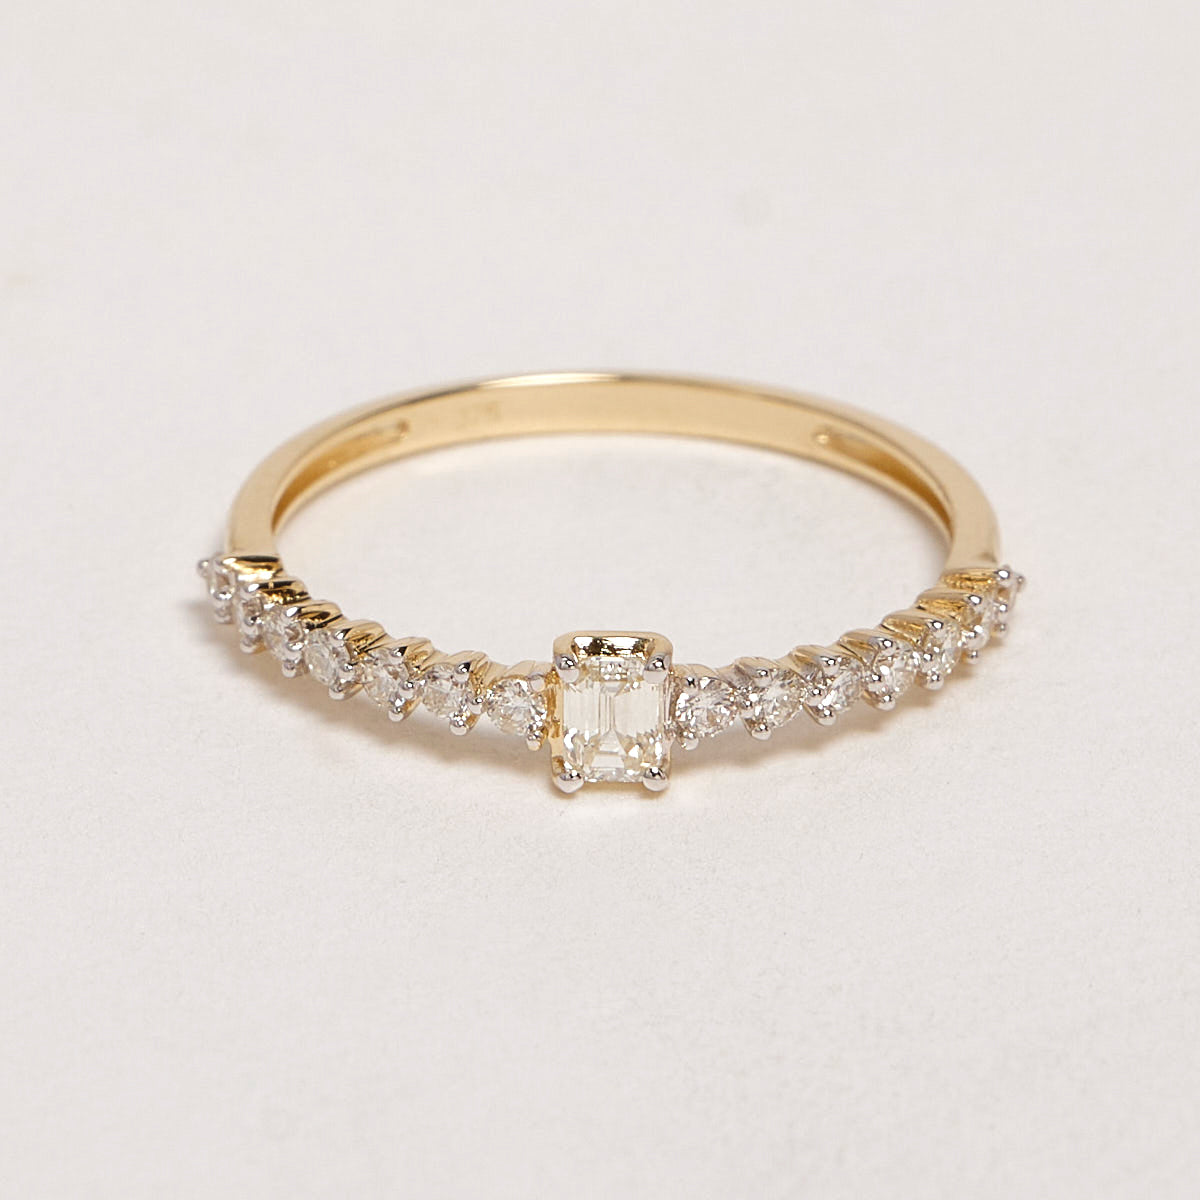 Romina 9ct Yellow Gold Diamond Ring